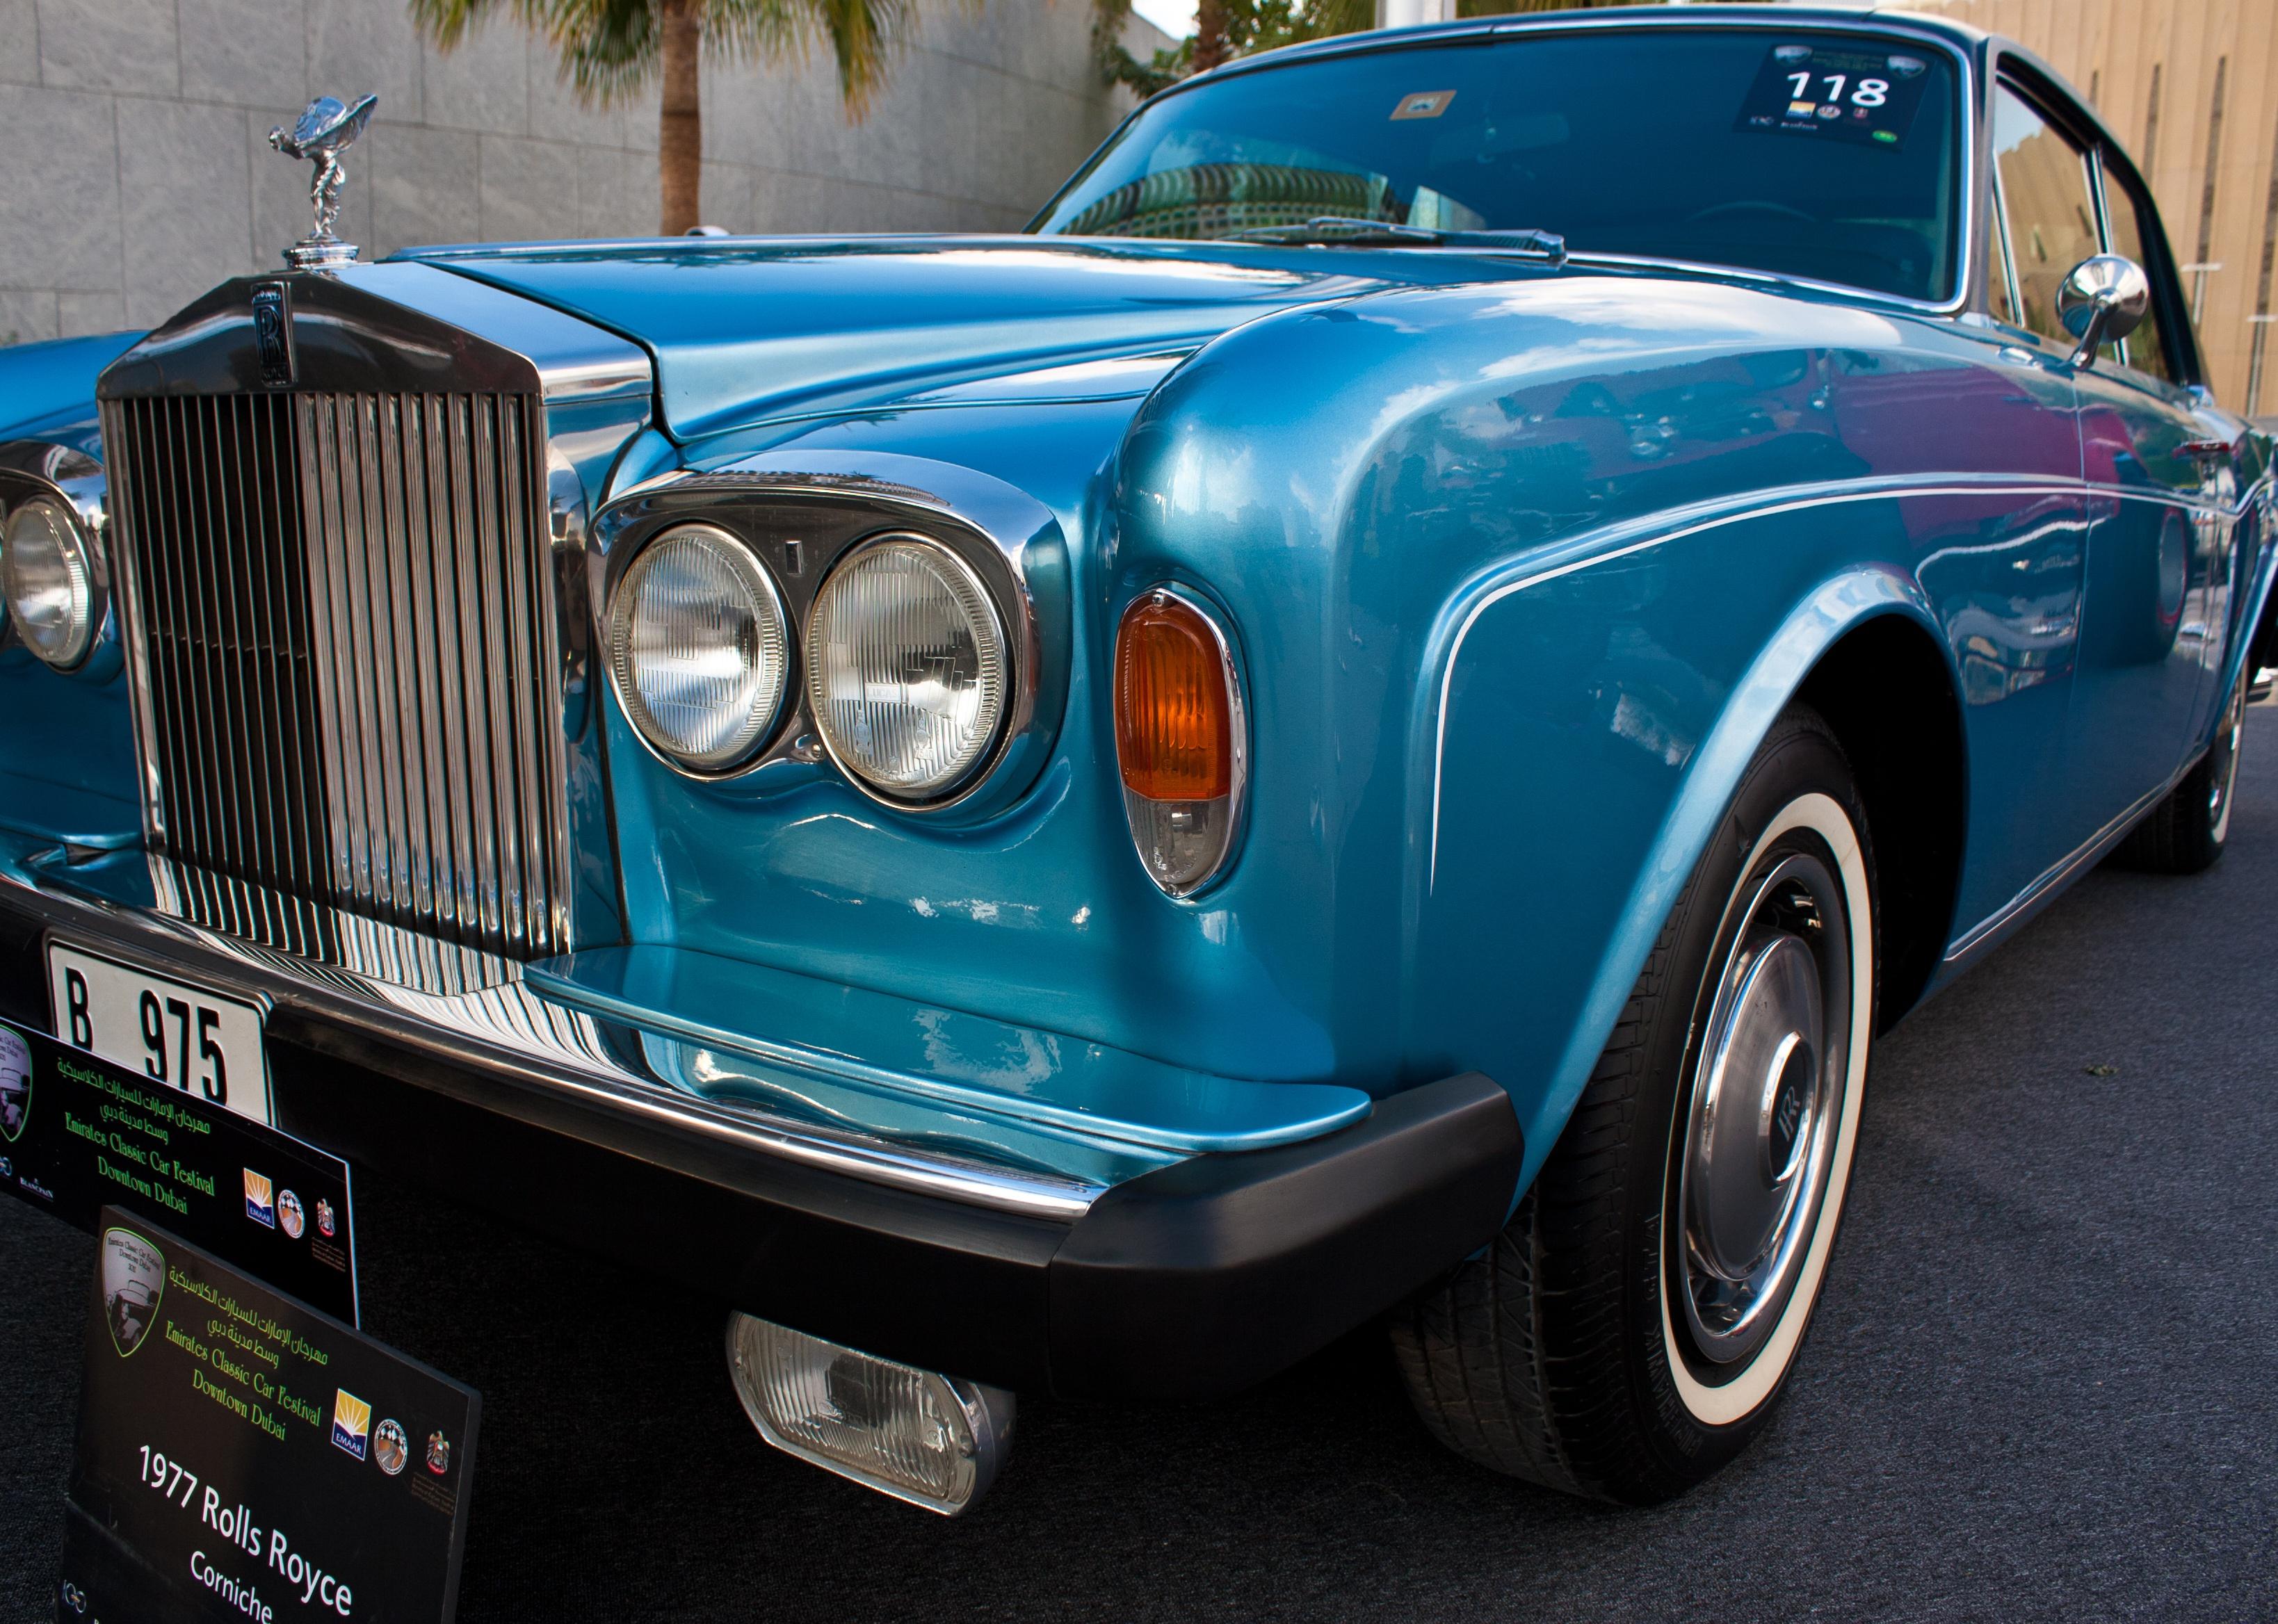 A 1977 Rolls Royce is on car display.